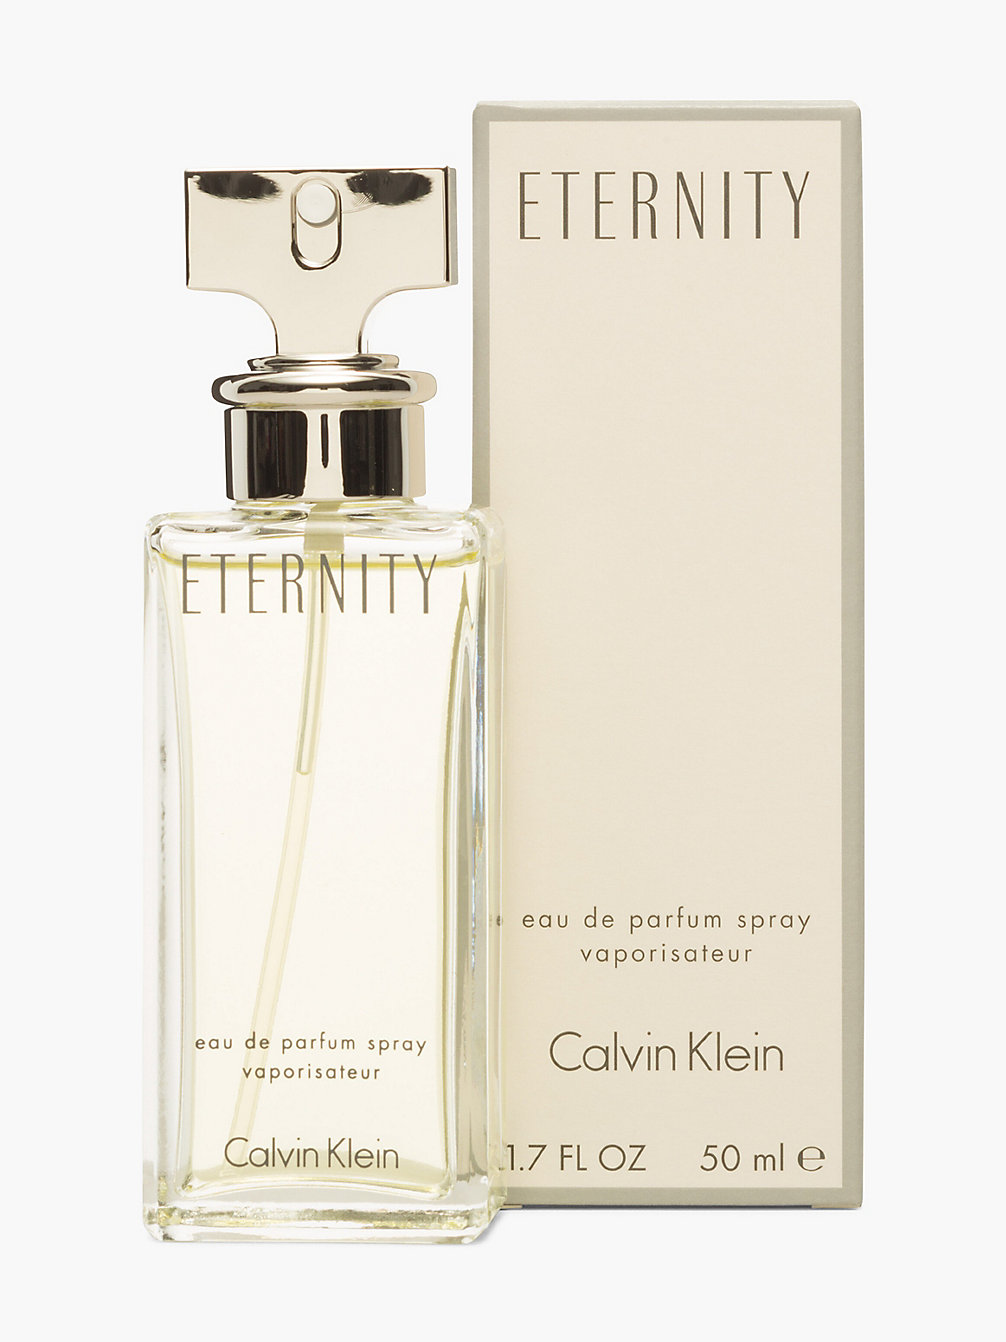 Women's Perfumes | Ladies' Fragrances | Calvin Klein®